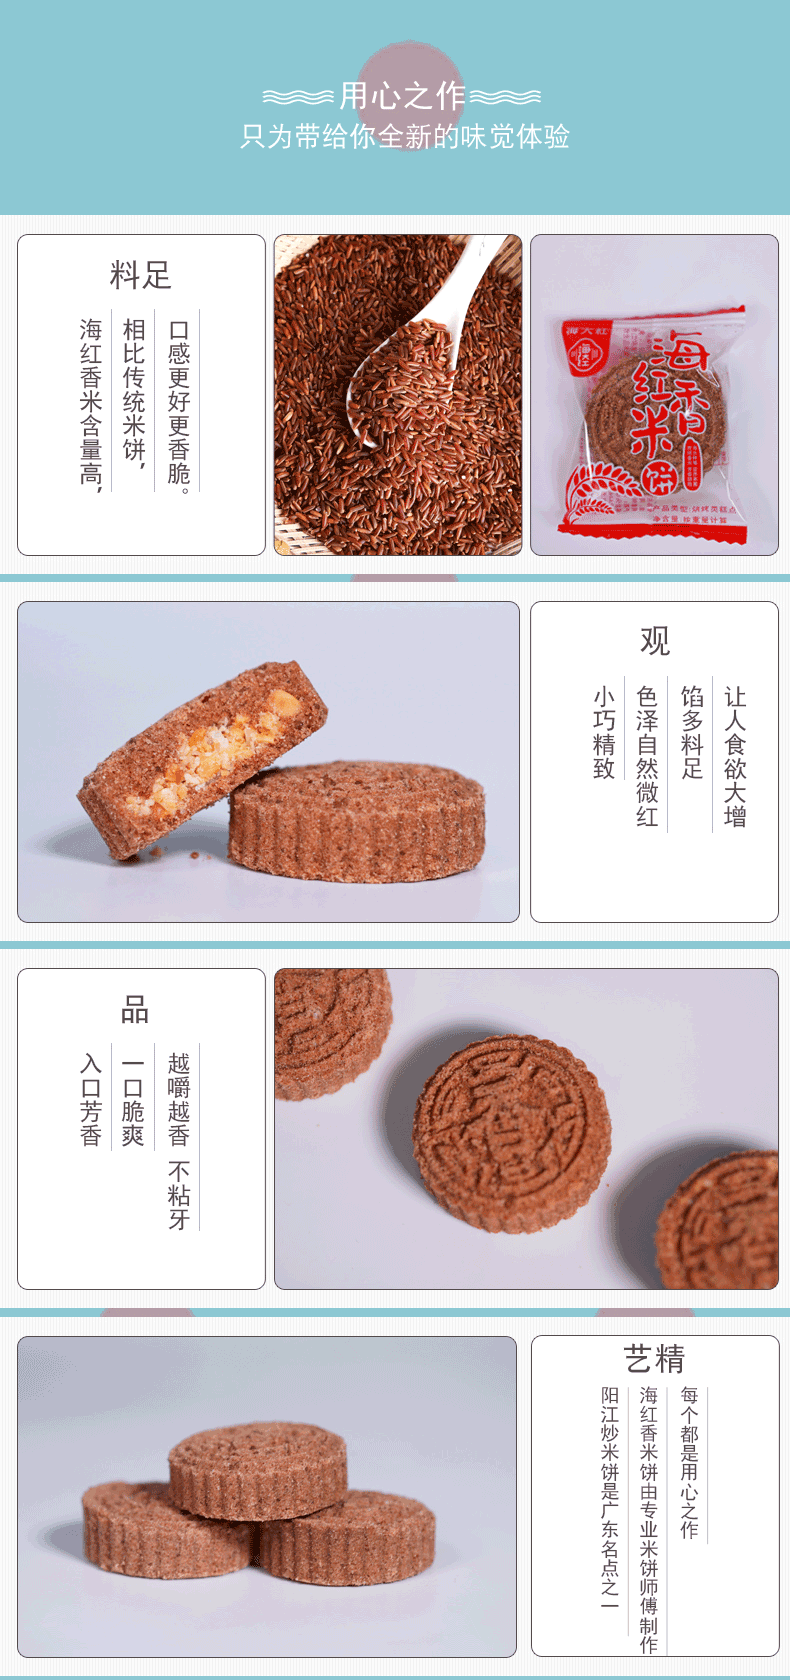 海大红 【湛江城区馆】海红米饼干252g/盒